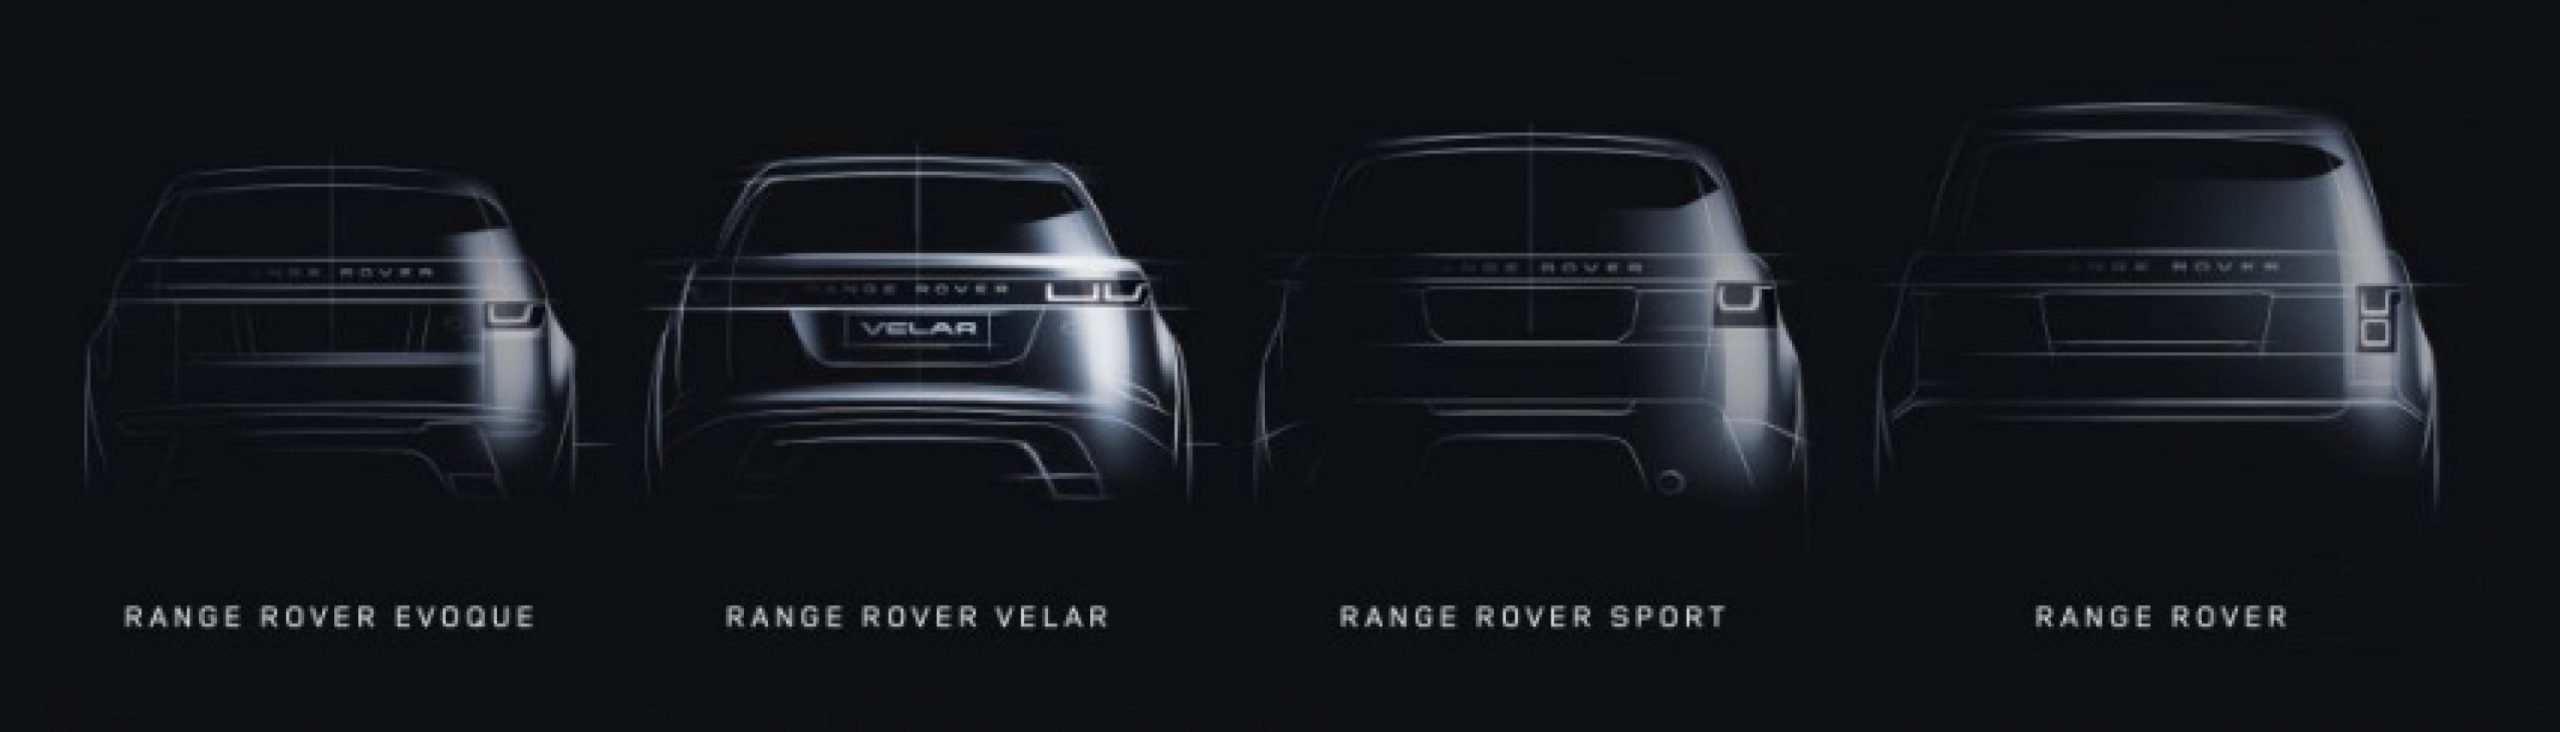 autos, cars, land rover, autos land rover, range rover, land rover teases velar in range rover expansion